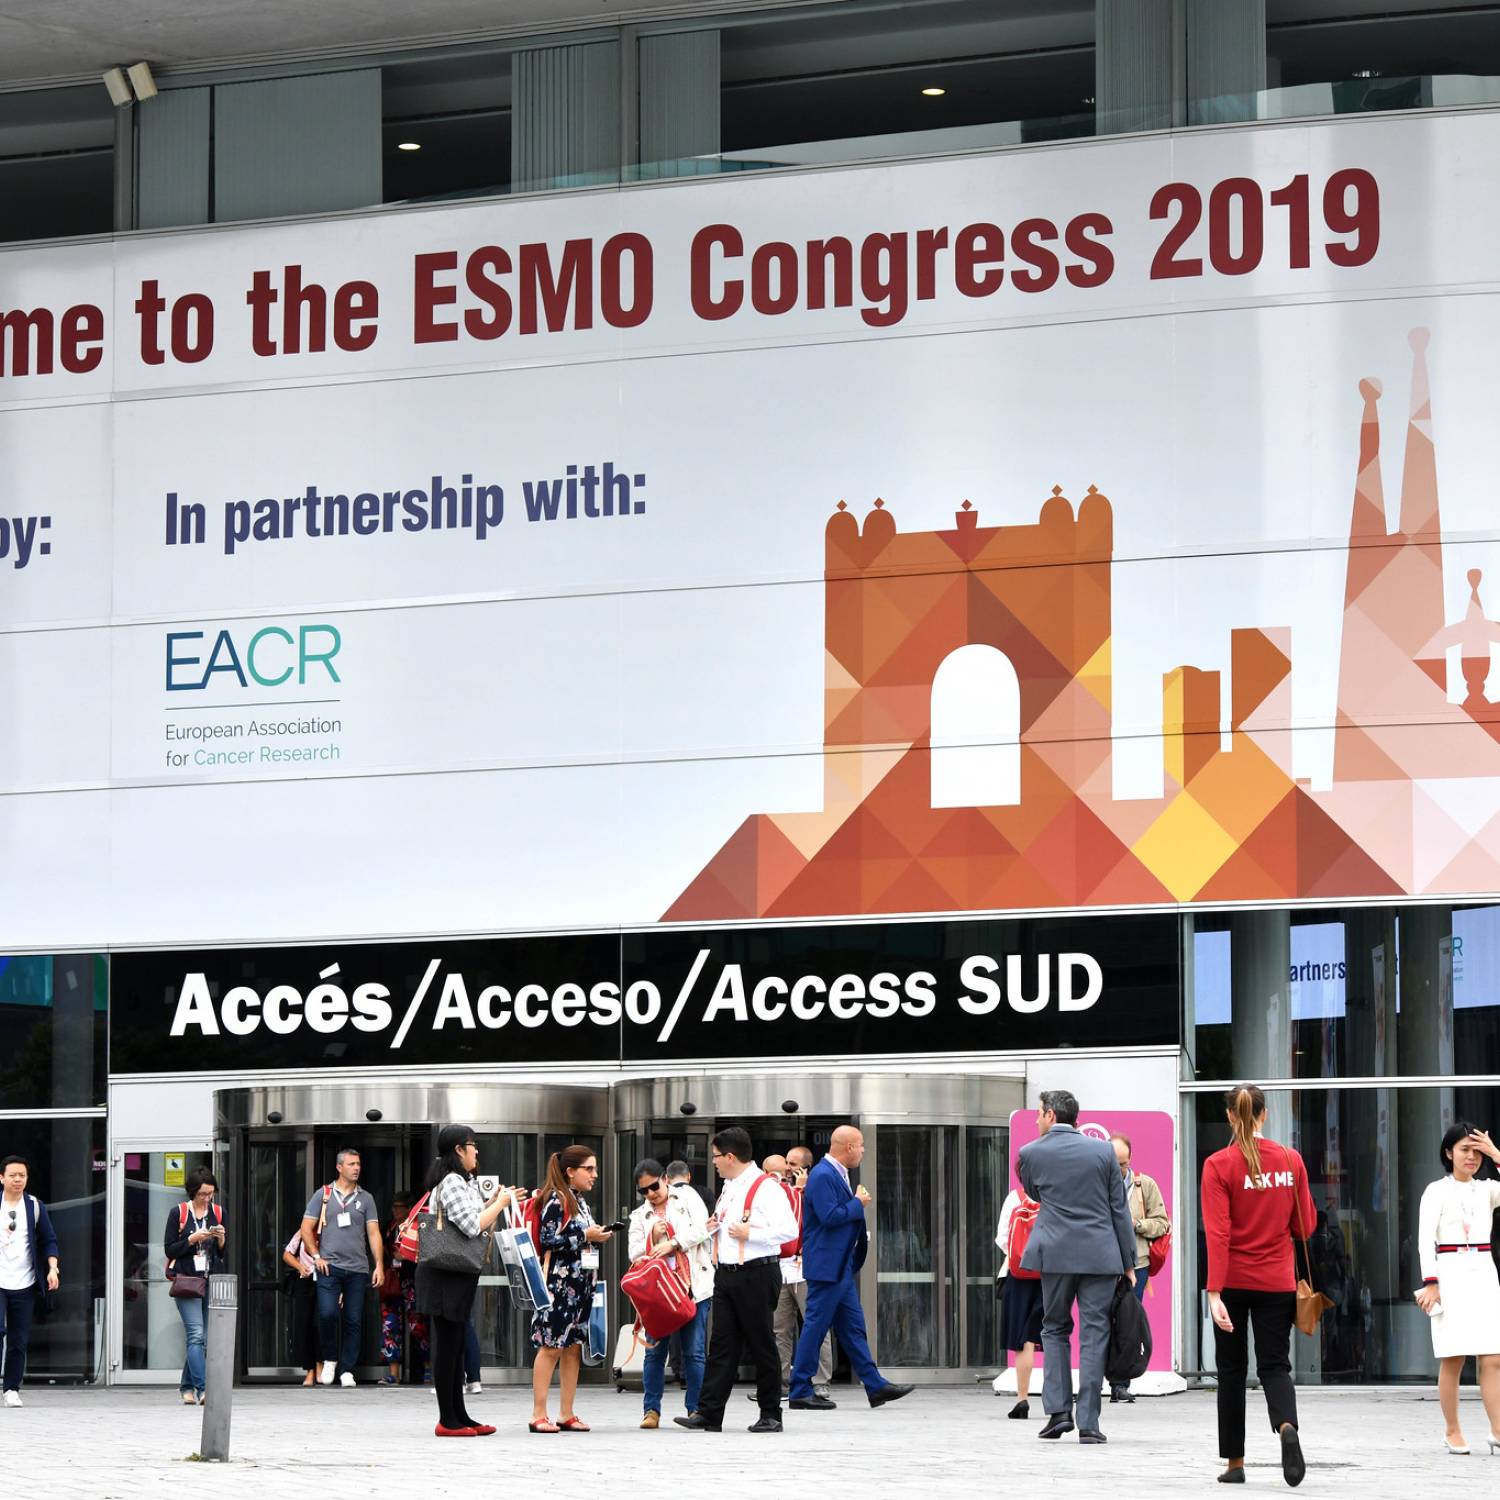 Zusammenfassung der Highlights vom ESMO-Kongress 2019